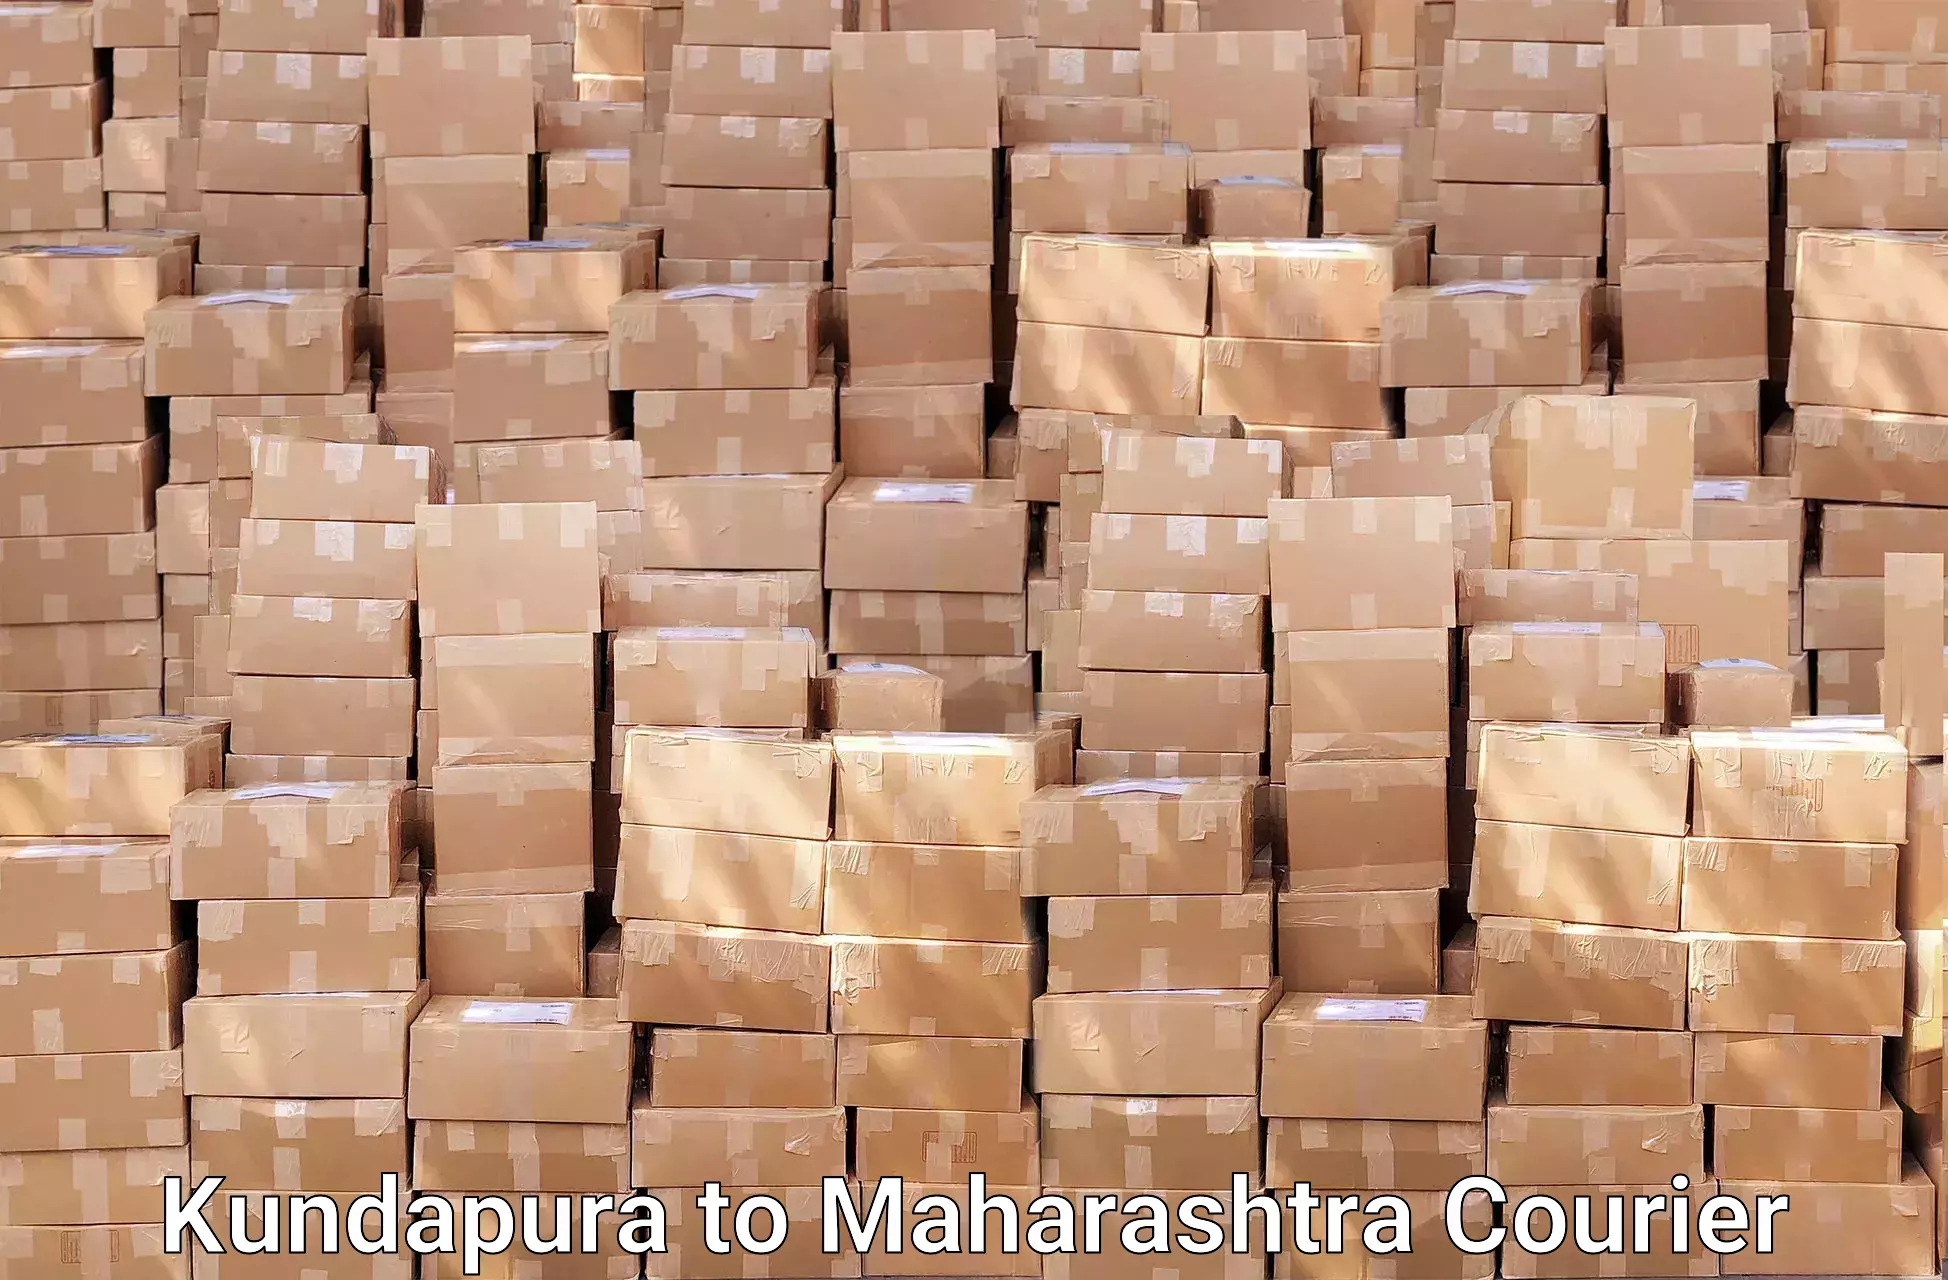 Professional movers Kundapura to Maharashtra